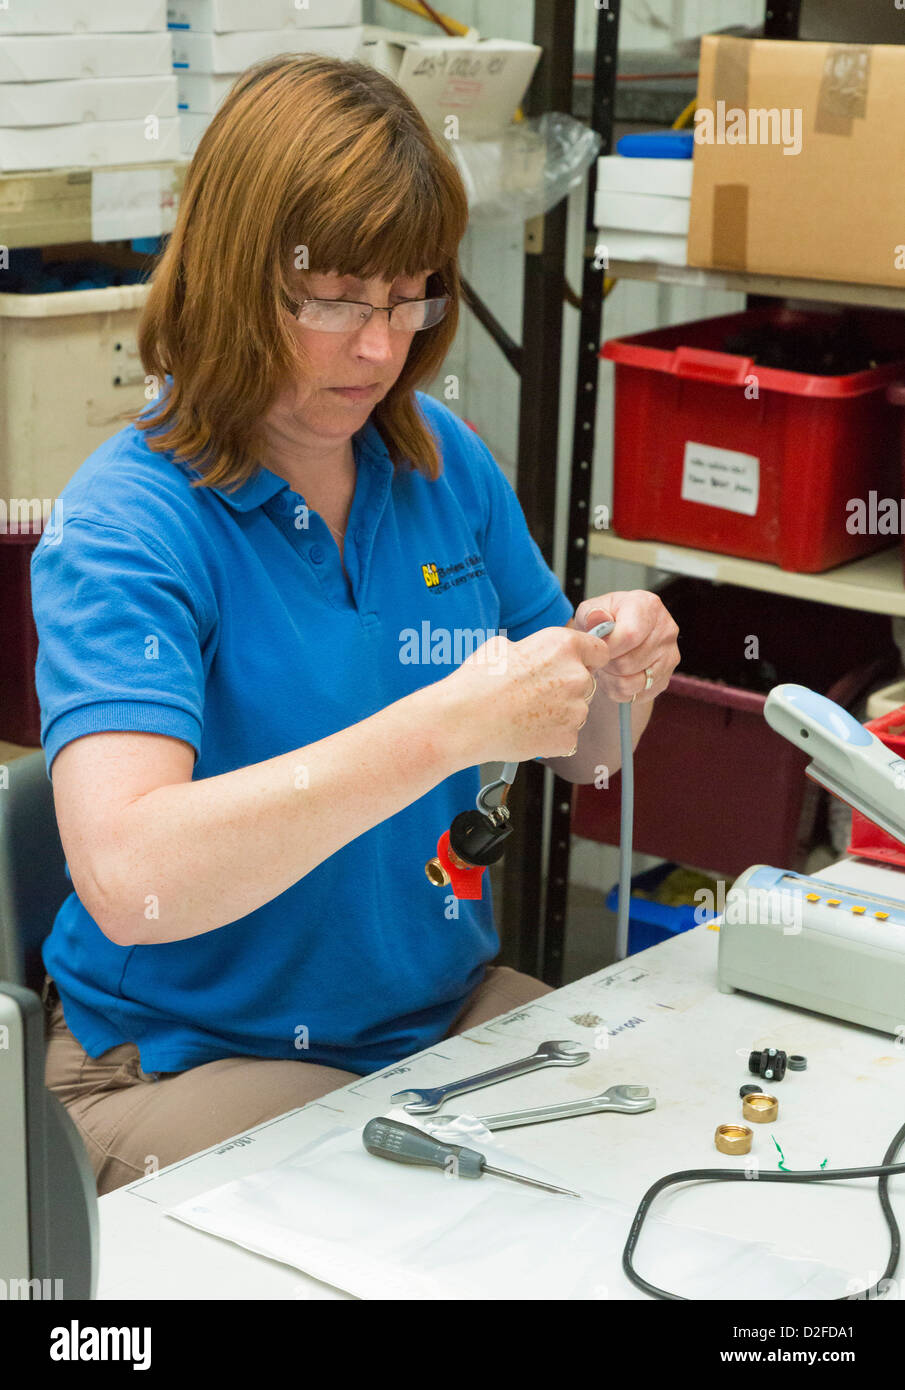 Mujer montaje de interruptores eléctricos de una fábrica. Foto de stock